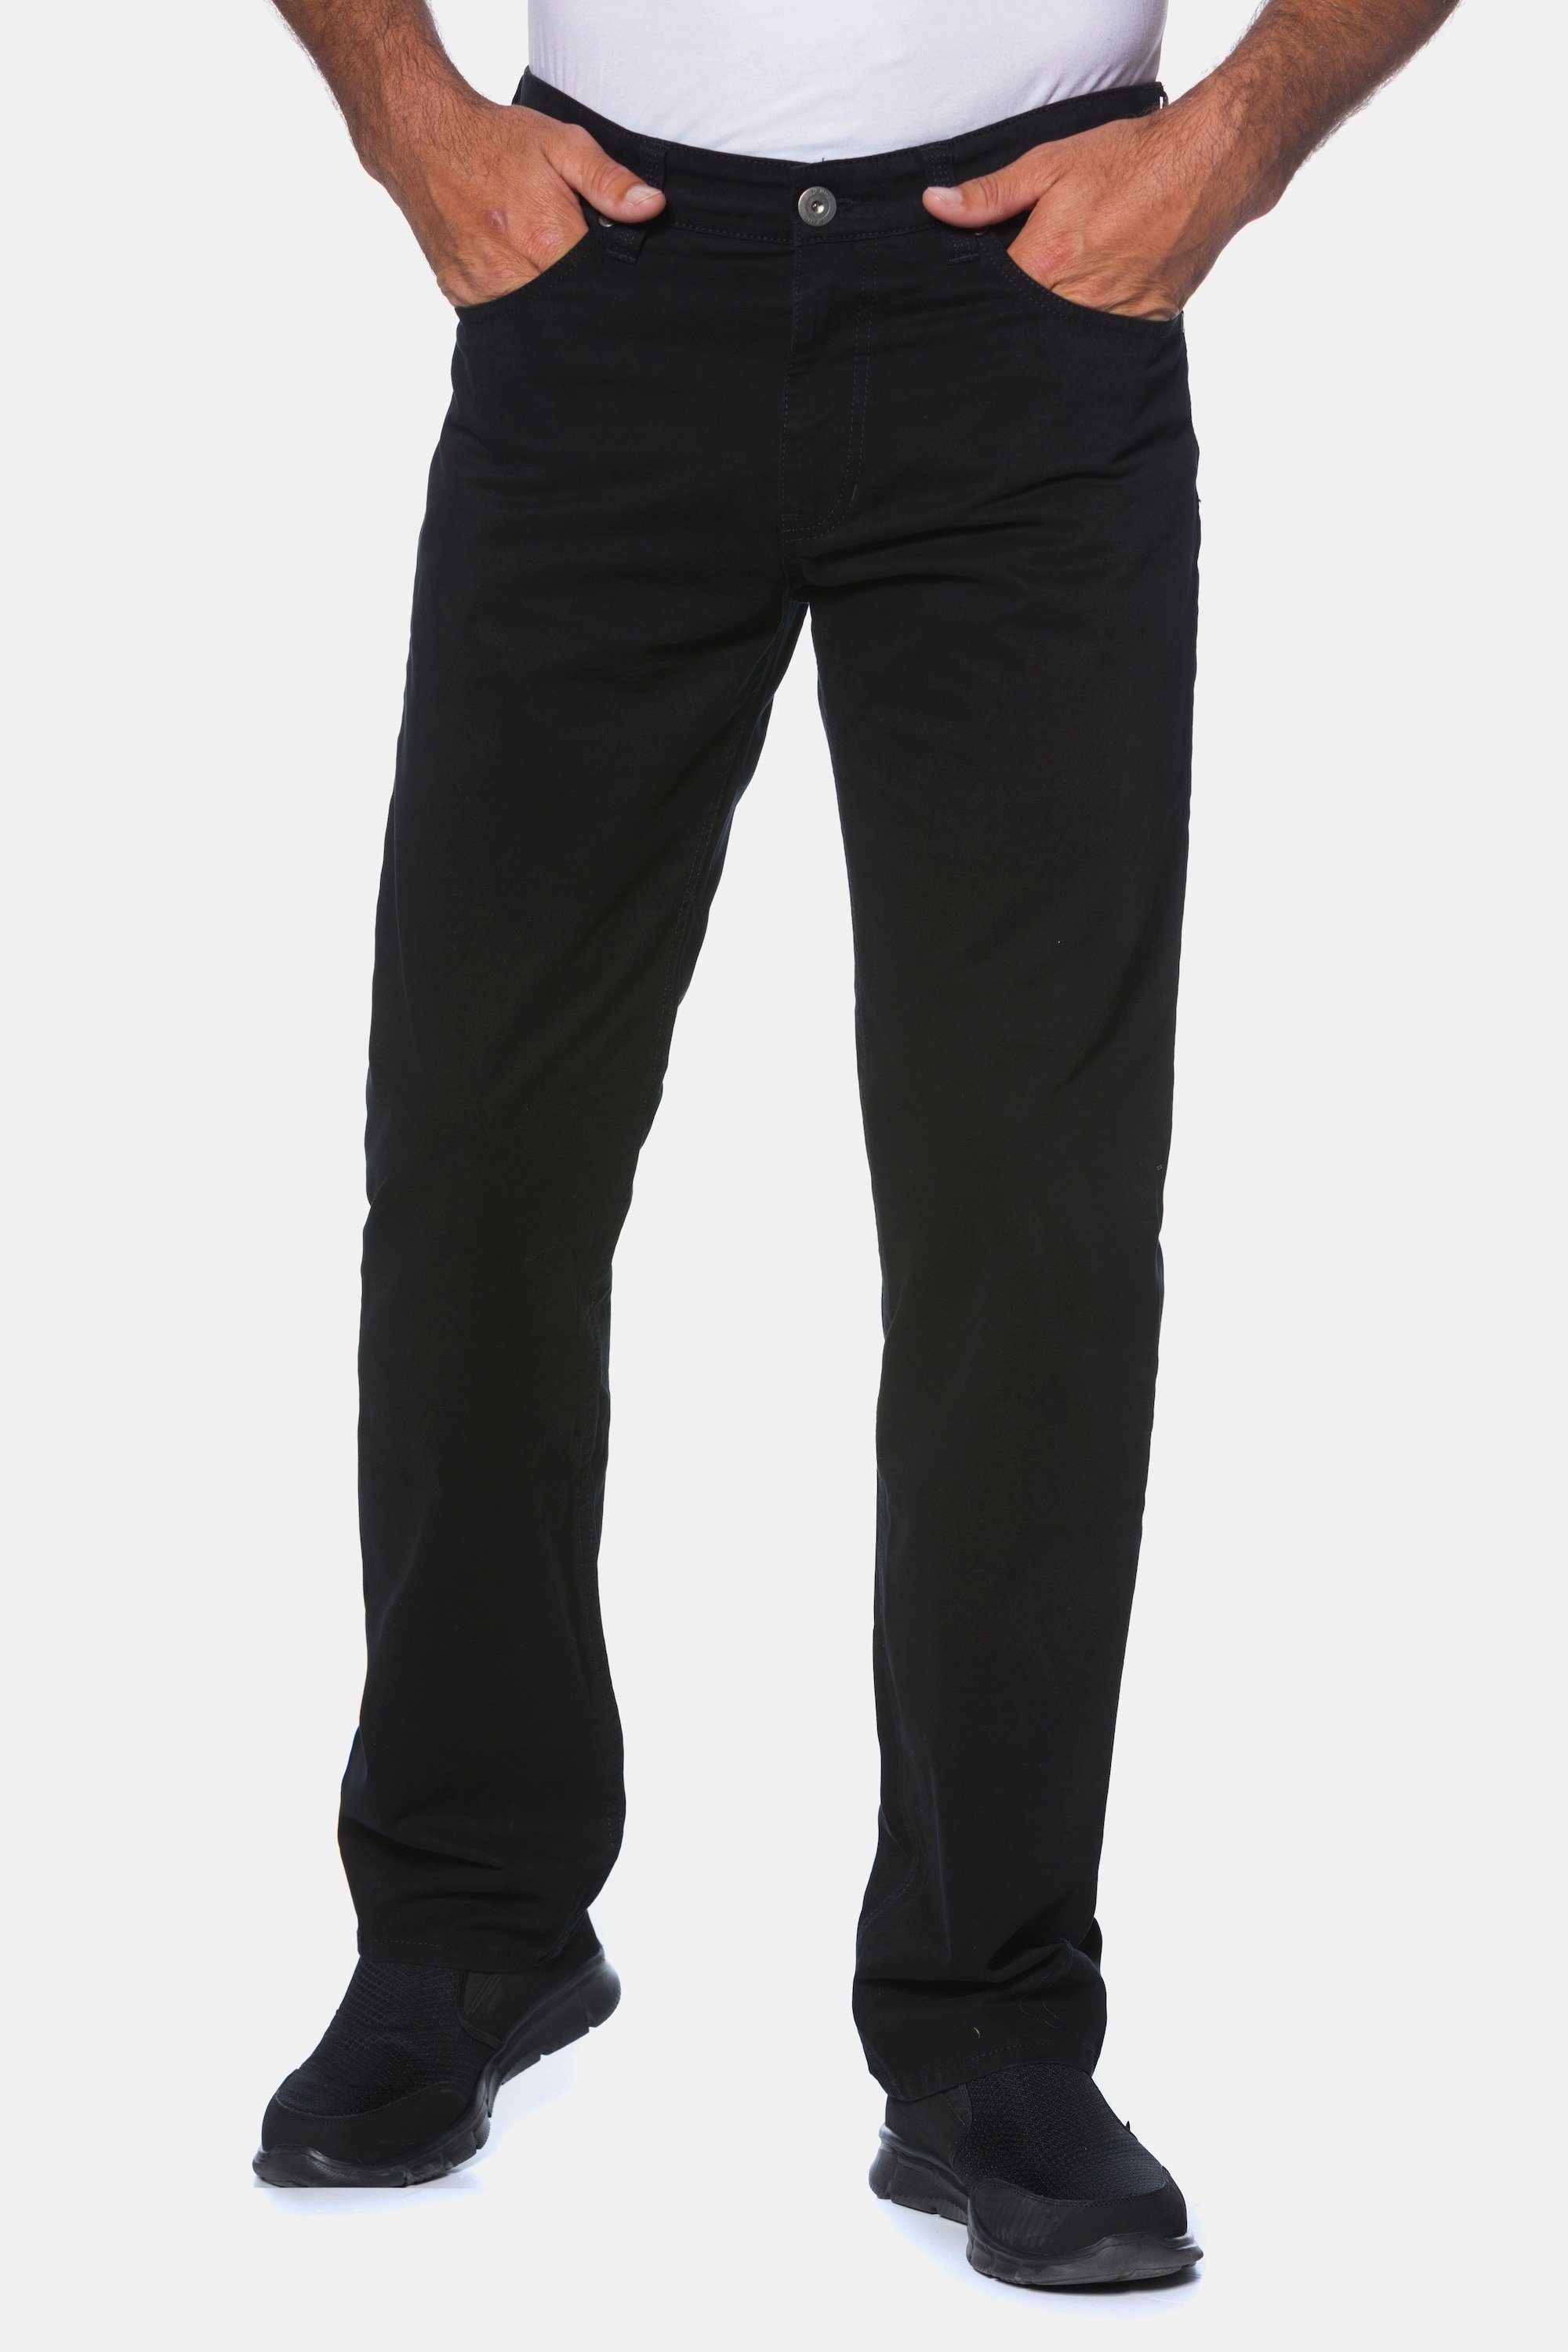 Herren Jeans JP1880 5-Pocket-Jeans bis 70 Hose Komfortbund Regular Fit Stretch